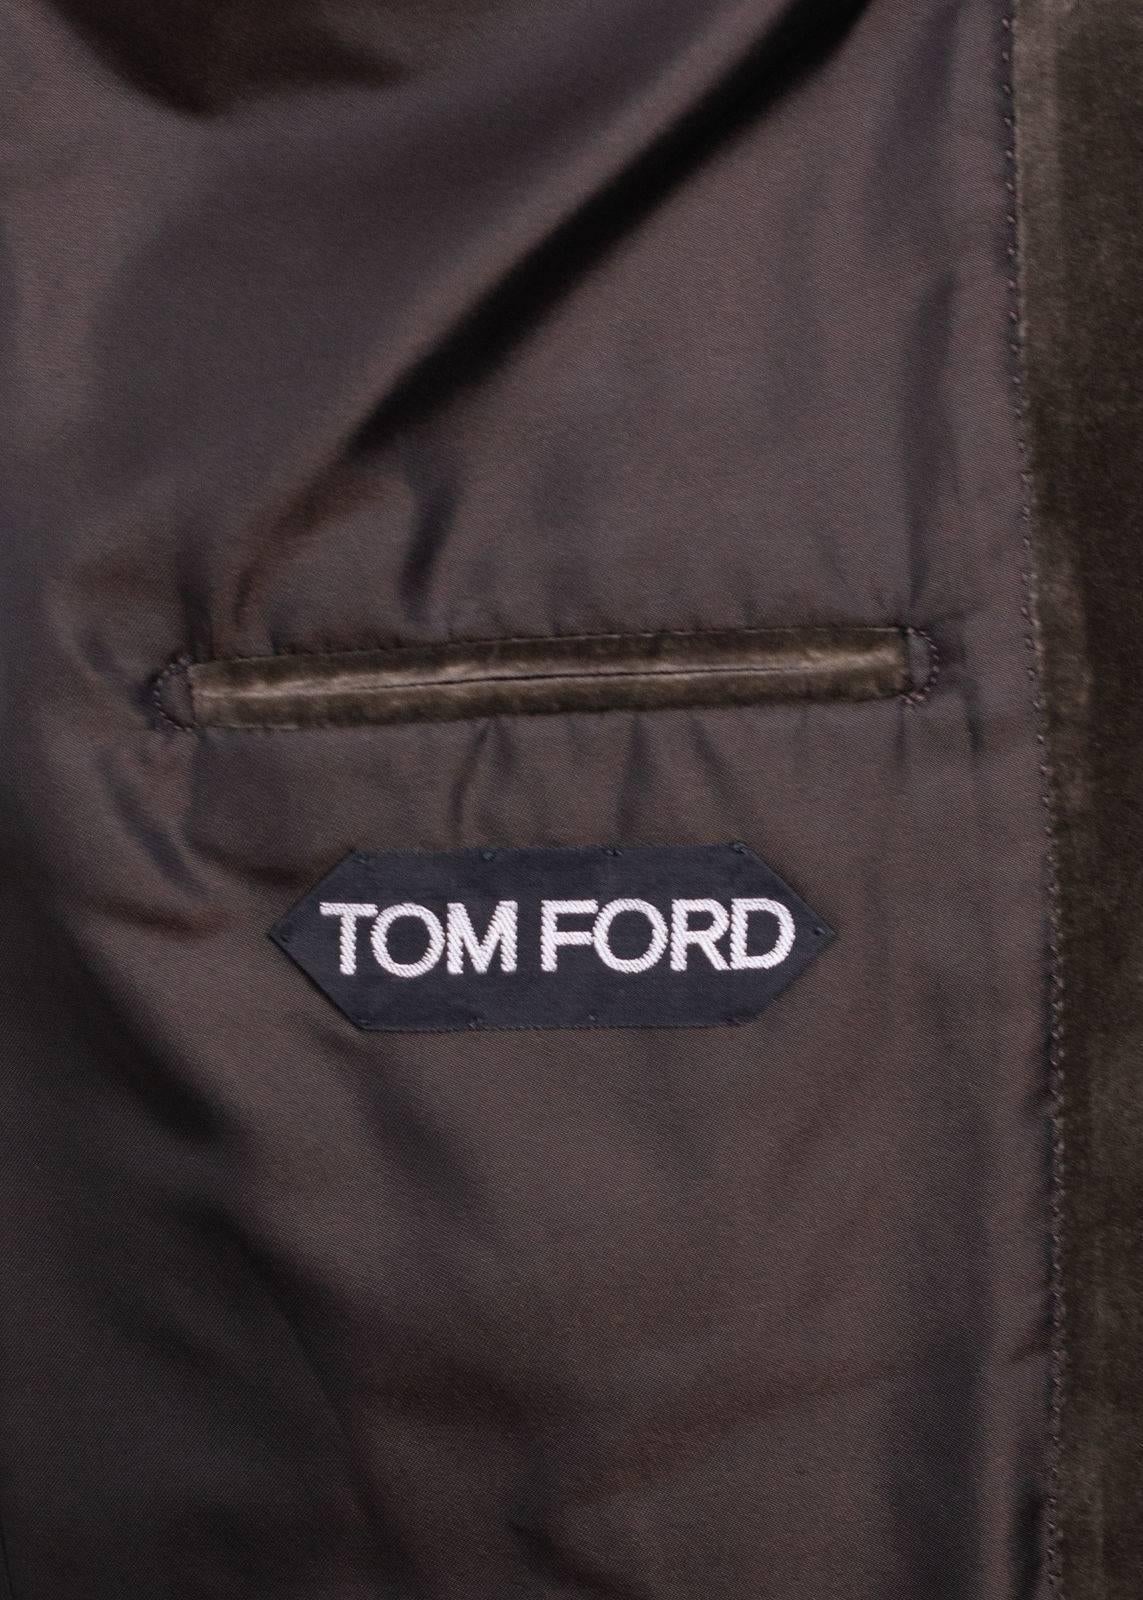 Men's Tom Ford Brown Velvet Peak Lapel Shelton Sport Jacket Sz54R/44R RTL$3440 For Sale